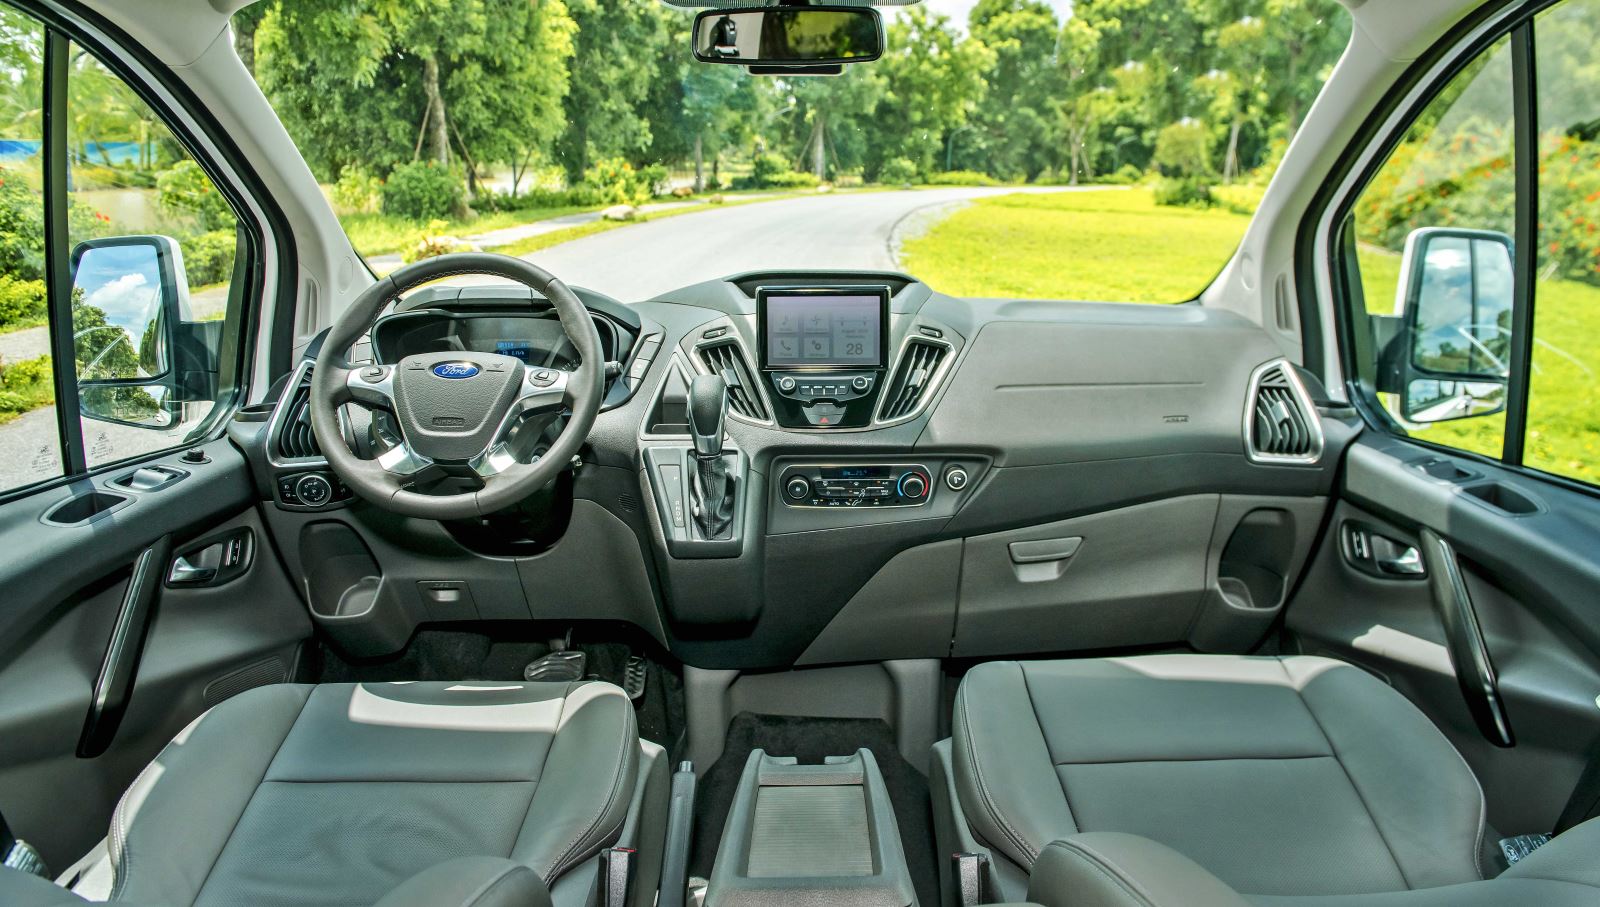 Ford ra mắt MPV 7 chỗ Tourneo giá 1 tỷ đồng